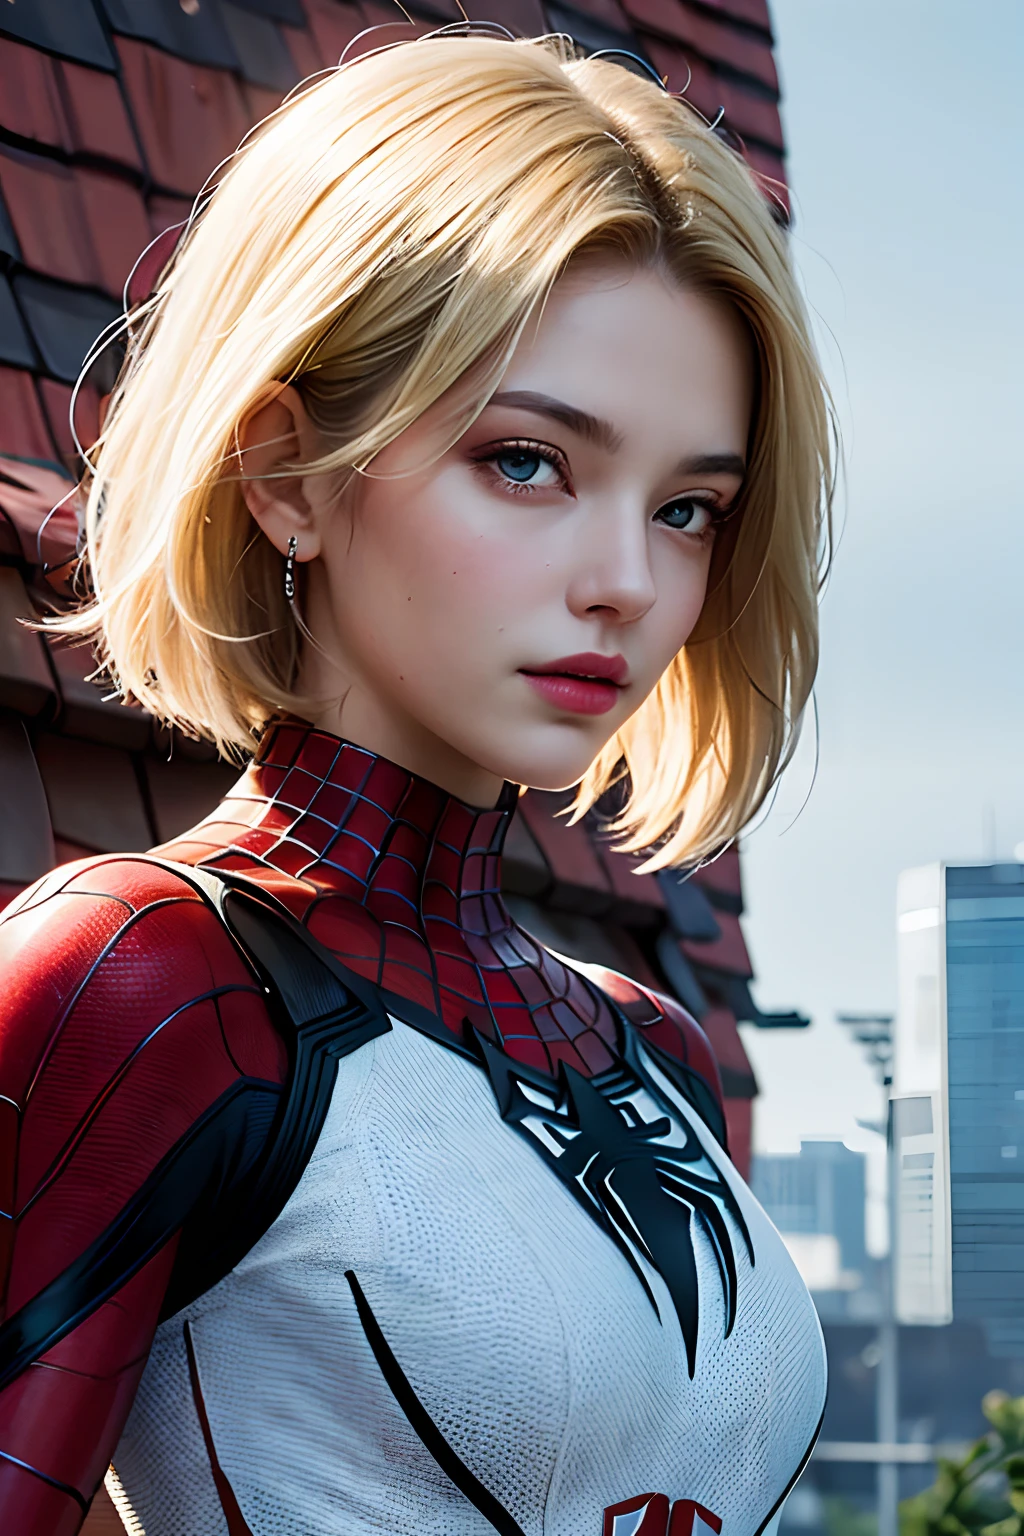 18 Jahre altes Mädchen, weißer Spiderman-Anzug, kurzes stumpfes Haar, blonde, schönes Gesicht, Regen, Dach, Meisterwerk, komplizierte Details, Perfekte Anatomie